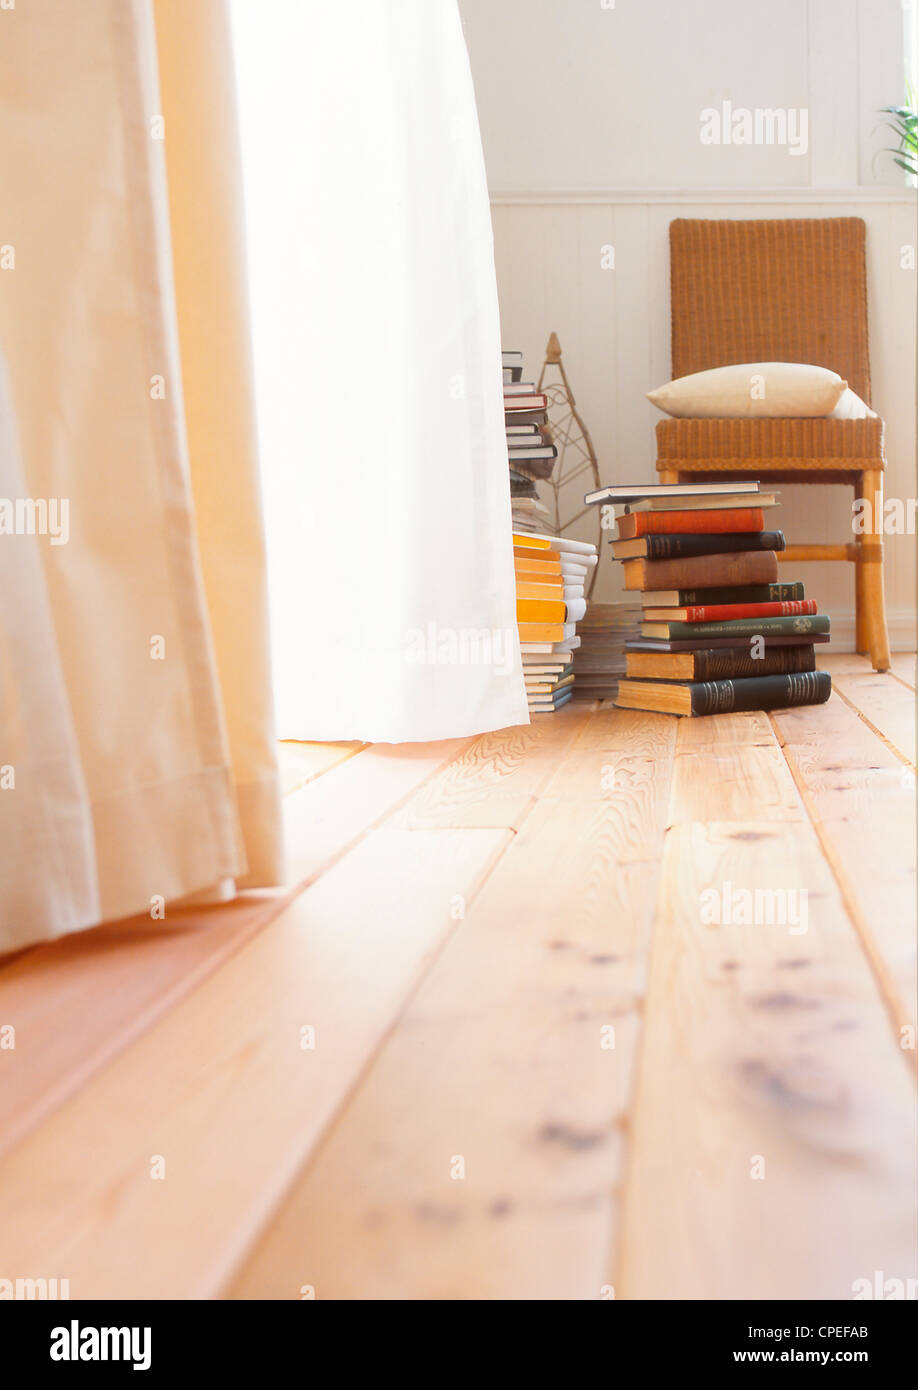 Stapel von Büchern und Stuhl In der Ecke des Raumes Stockfoto